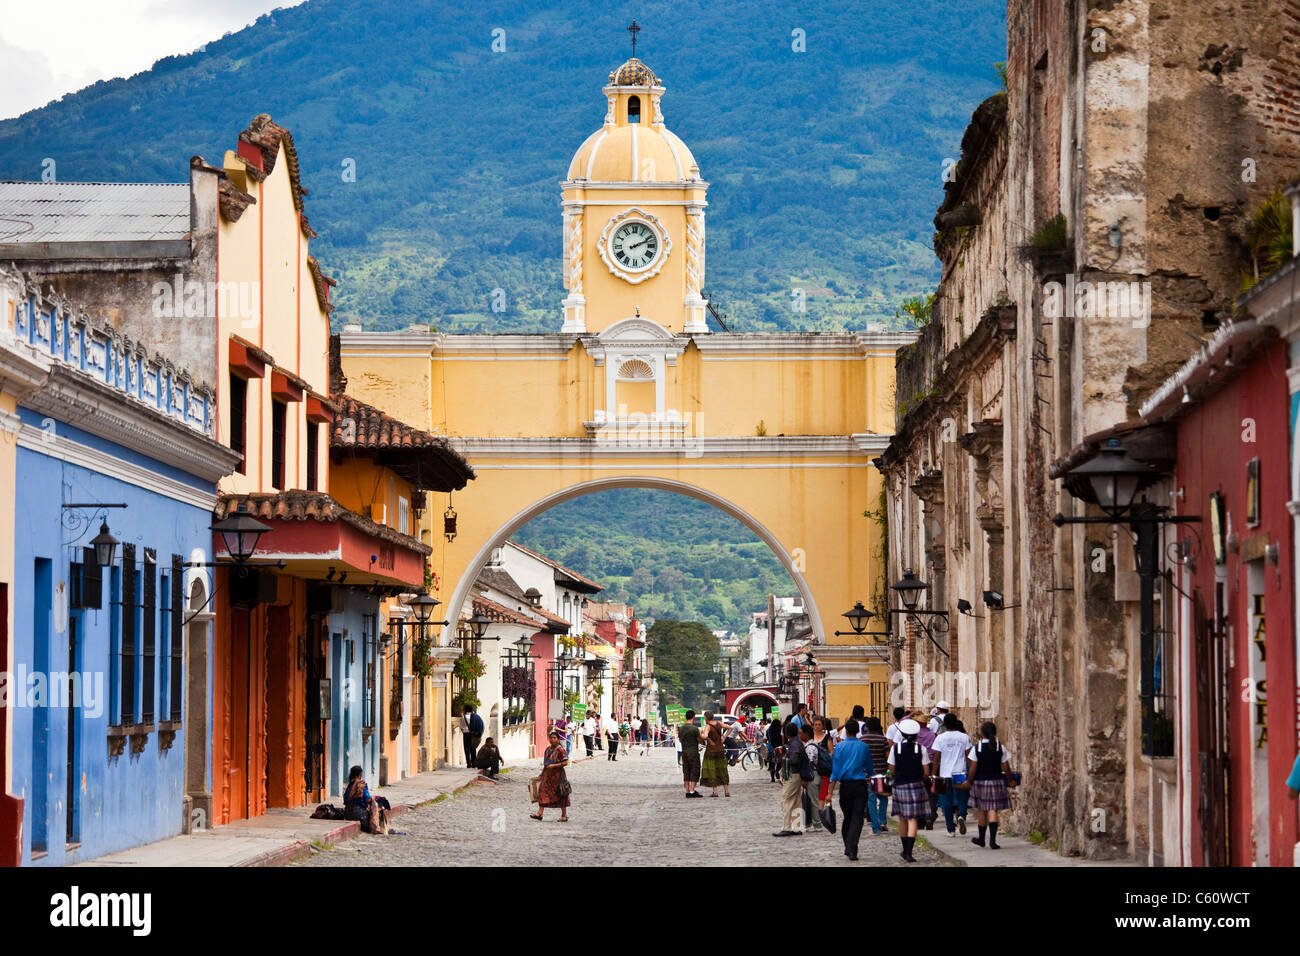 Santa Catalina Arch, Calle del Arco, Antigua, Guatemala Stock Photo